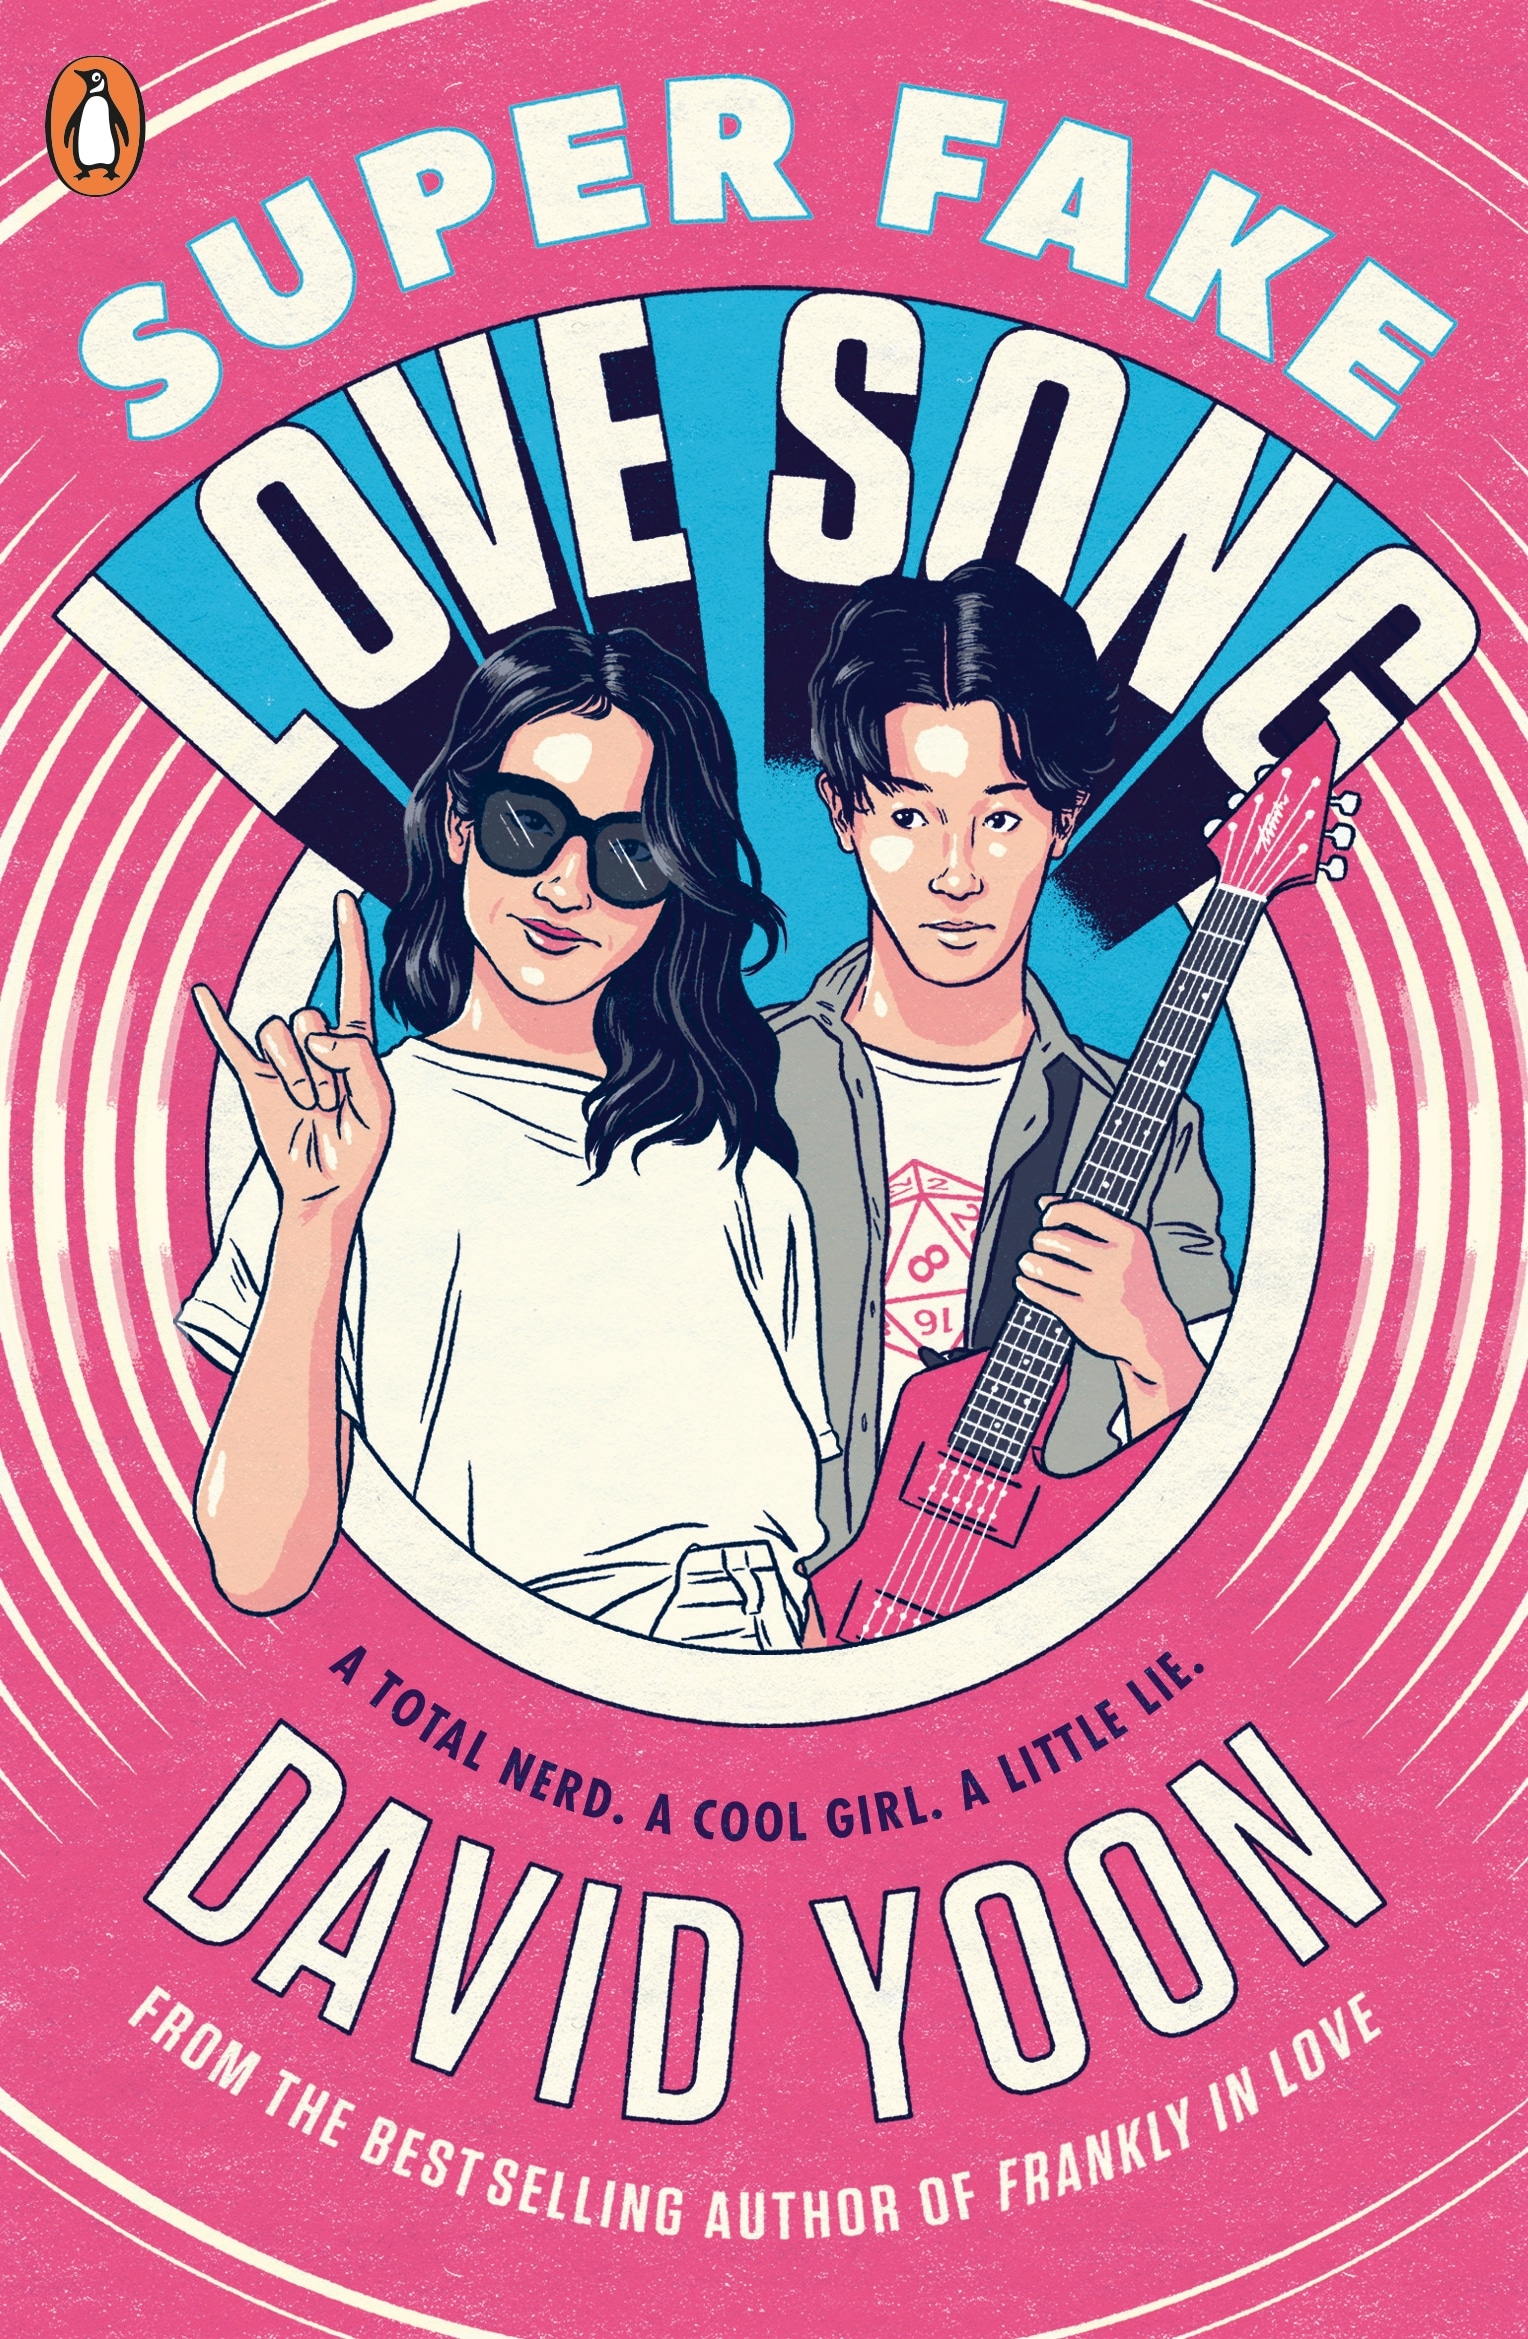 Book “Super Fake Love Song” by David Yoon — November 19, 2020